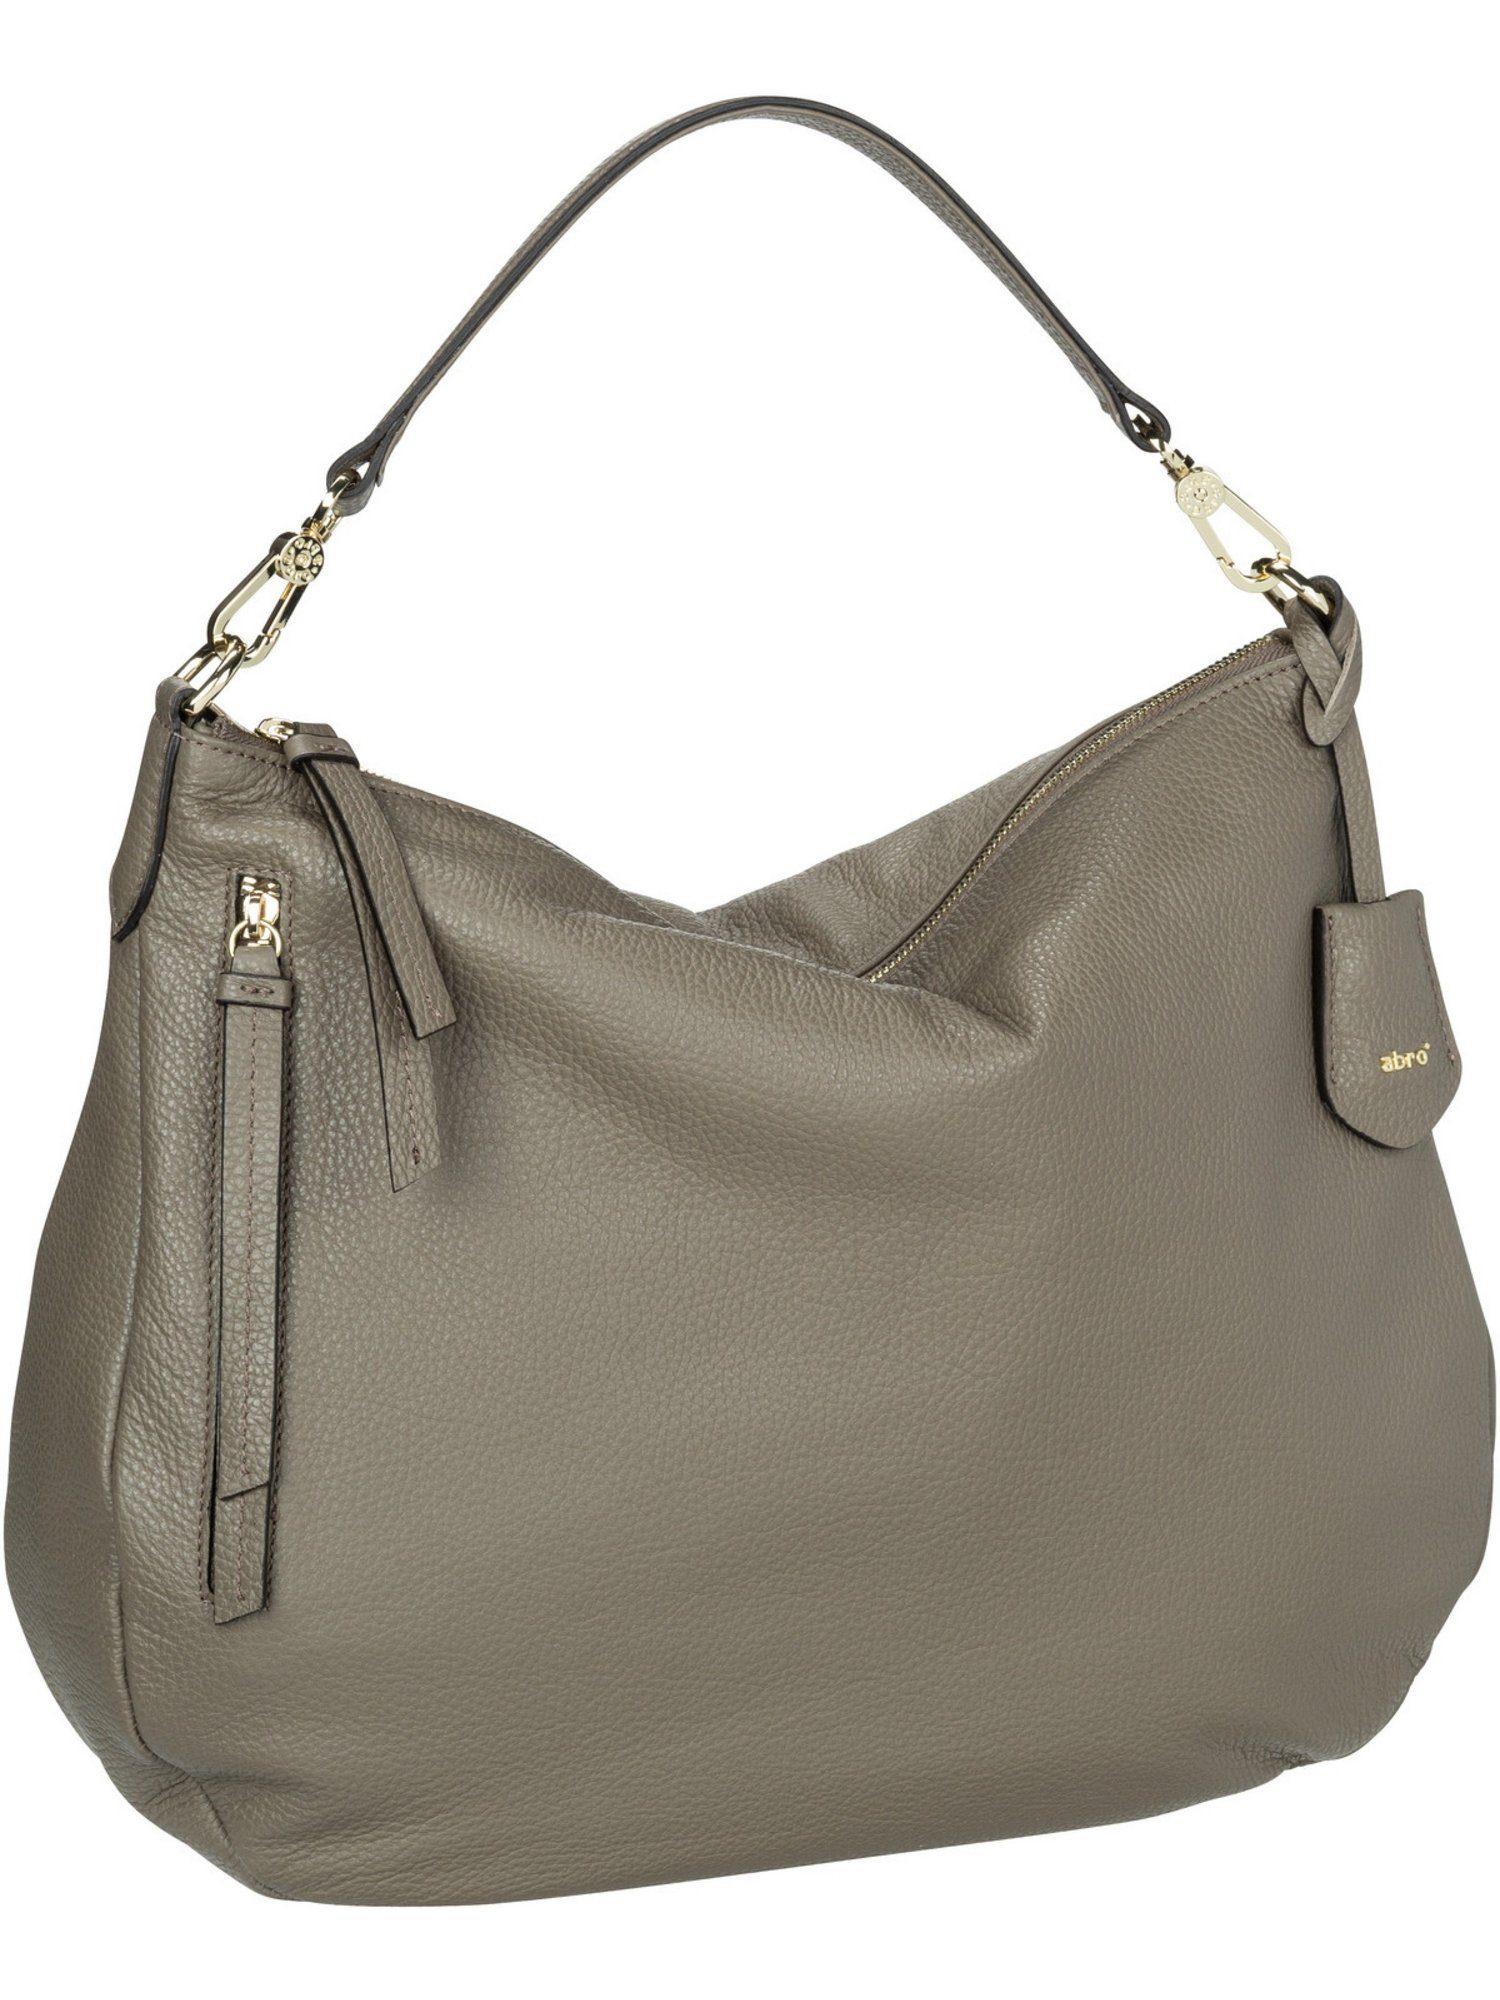 Abro Damen Handtaschen online kaufen | OTTO